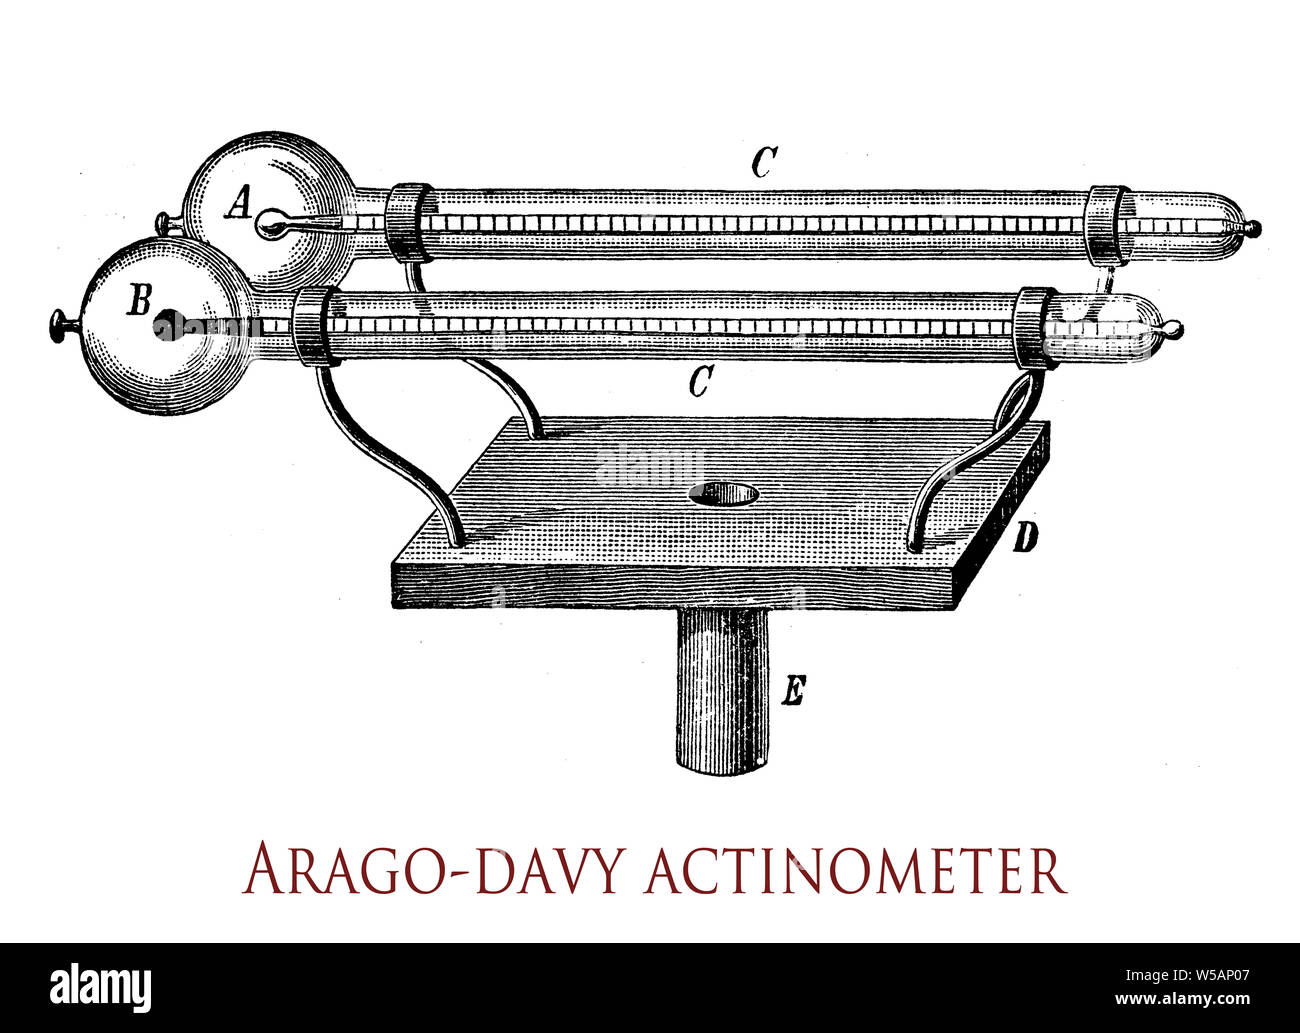 Arago-Davy actinometer strumento per la misurazione del calore-intensità dei raggi del sole è costituito da una coppia di brillanti e nero-termometri a bulbo ogni sbarrato con un vetro sferiche di caso privo di aria: quando viene esposta al sole la lampada nera raggiunge una temperatura superiore rispetto a quella della lampadina luminosa, la differenza è un indice della quantità di calore. Foto Stock